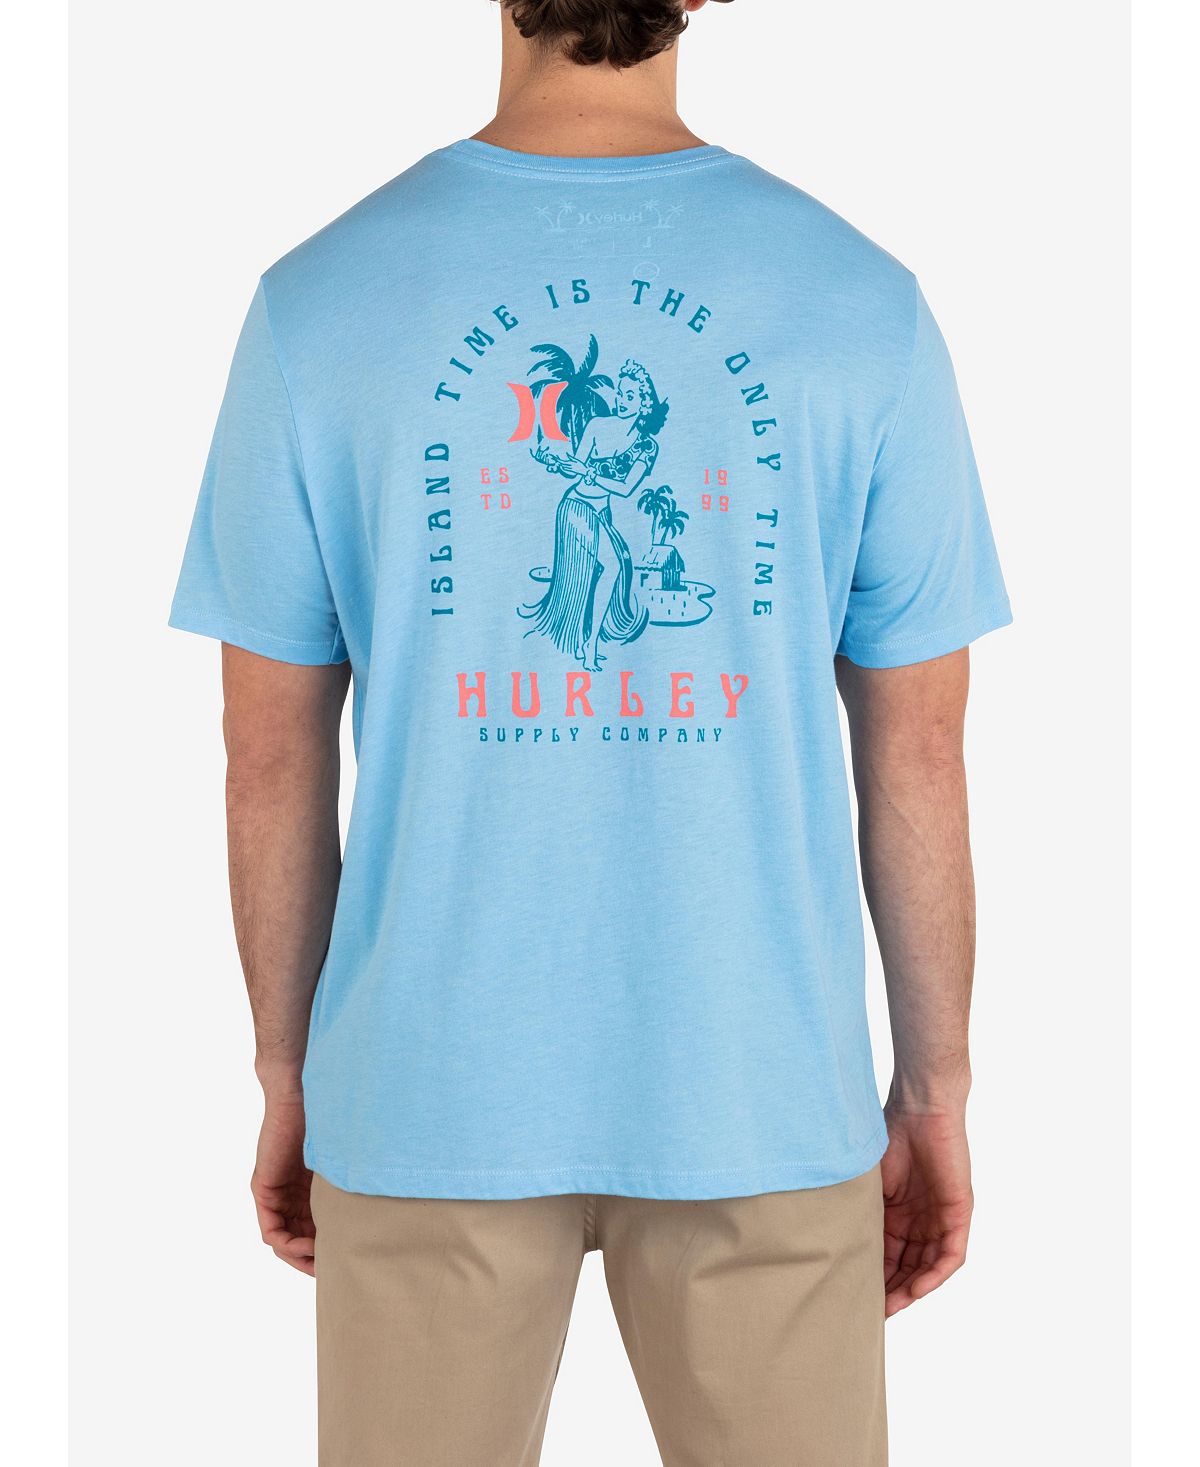 Мужская футболка Island Time с коротким рукавом на каждый день Hurley мужская повседневная футболка с коротким рукавом fish food hurley